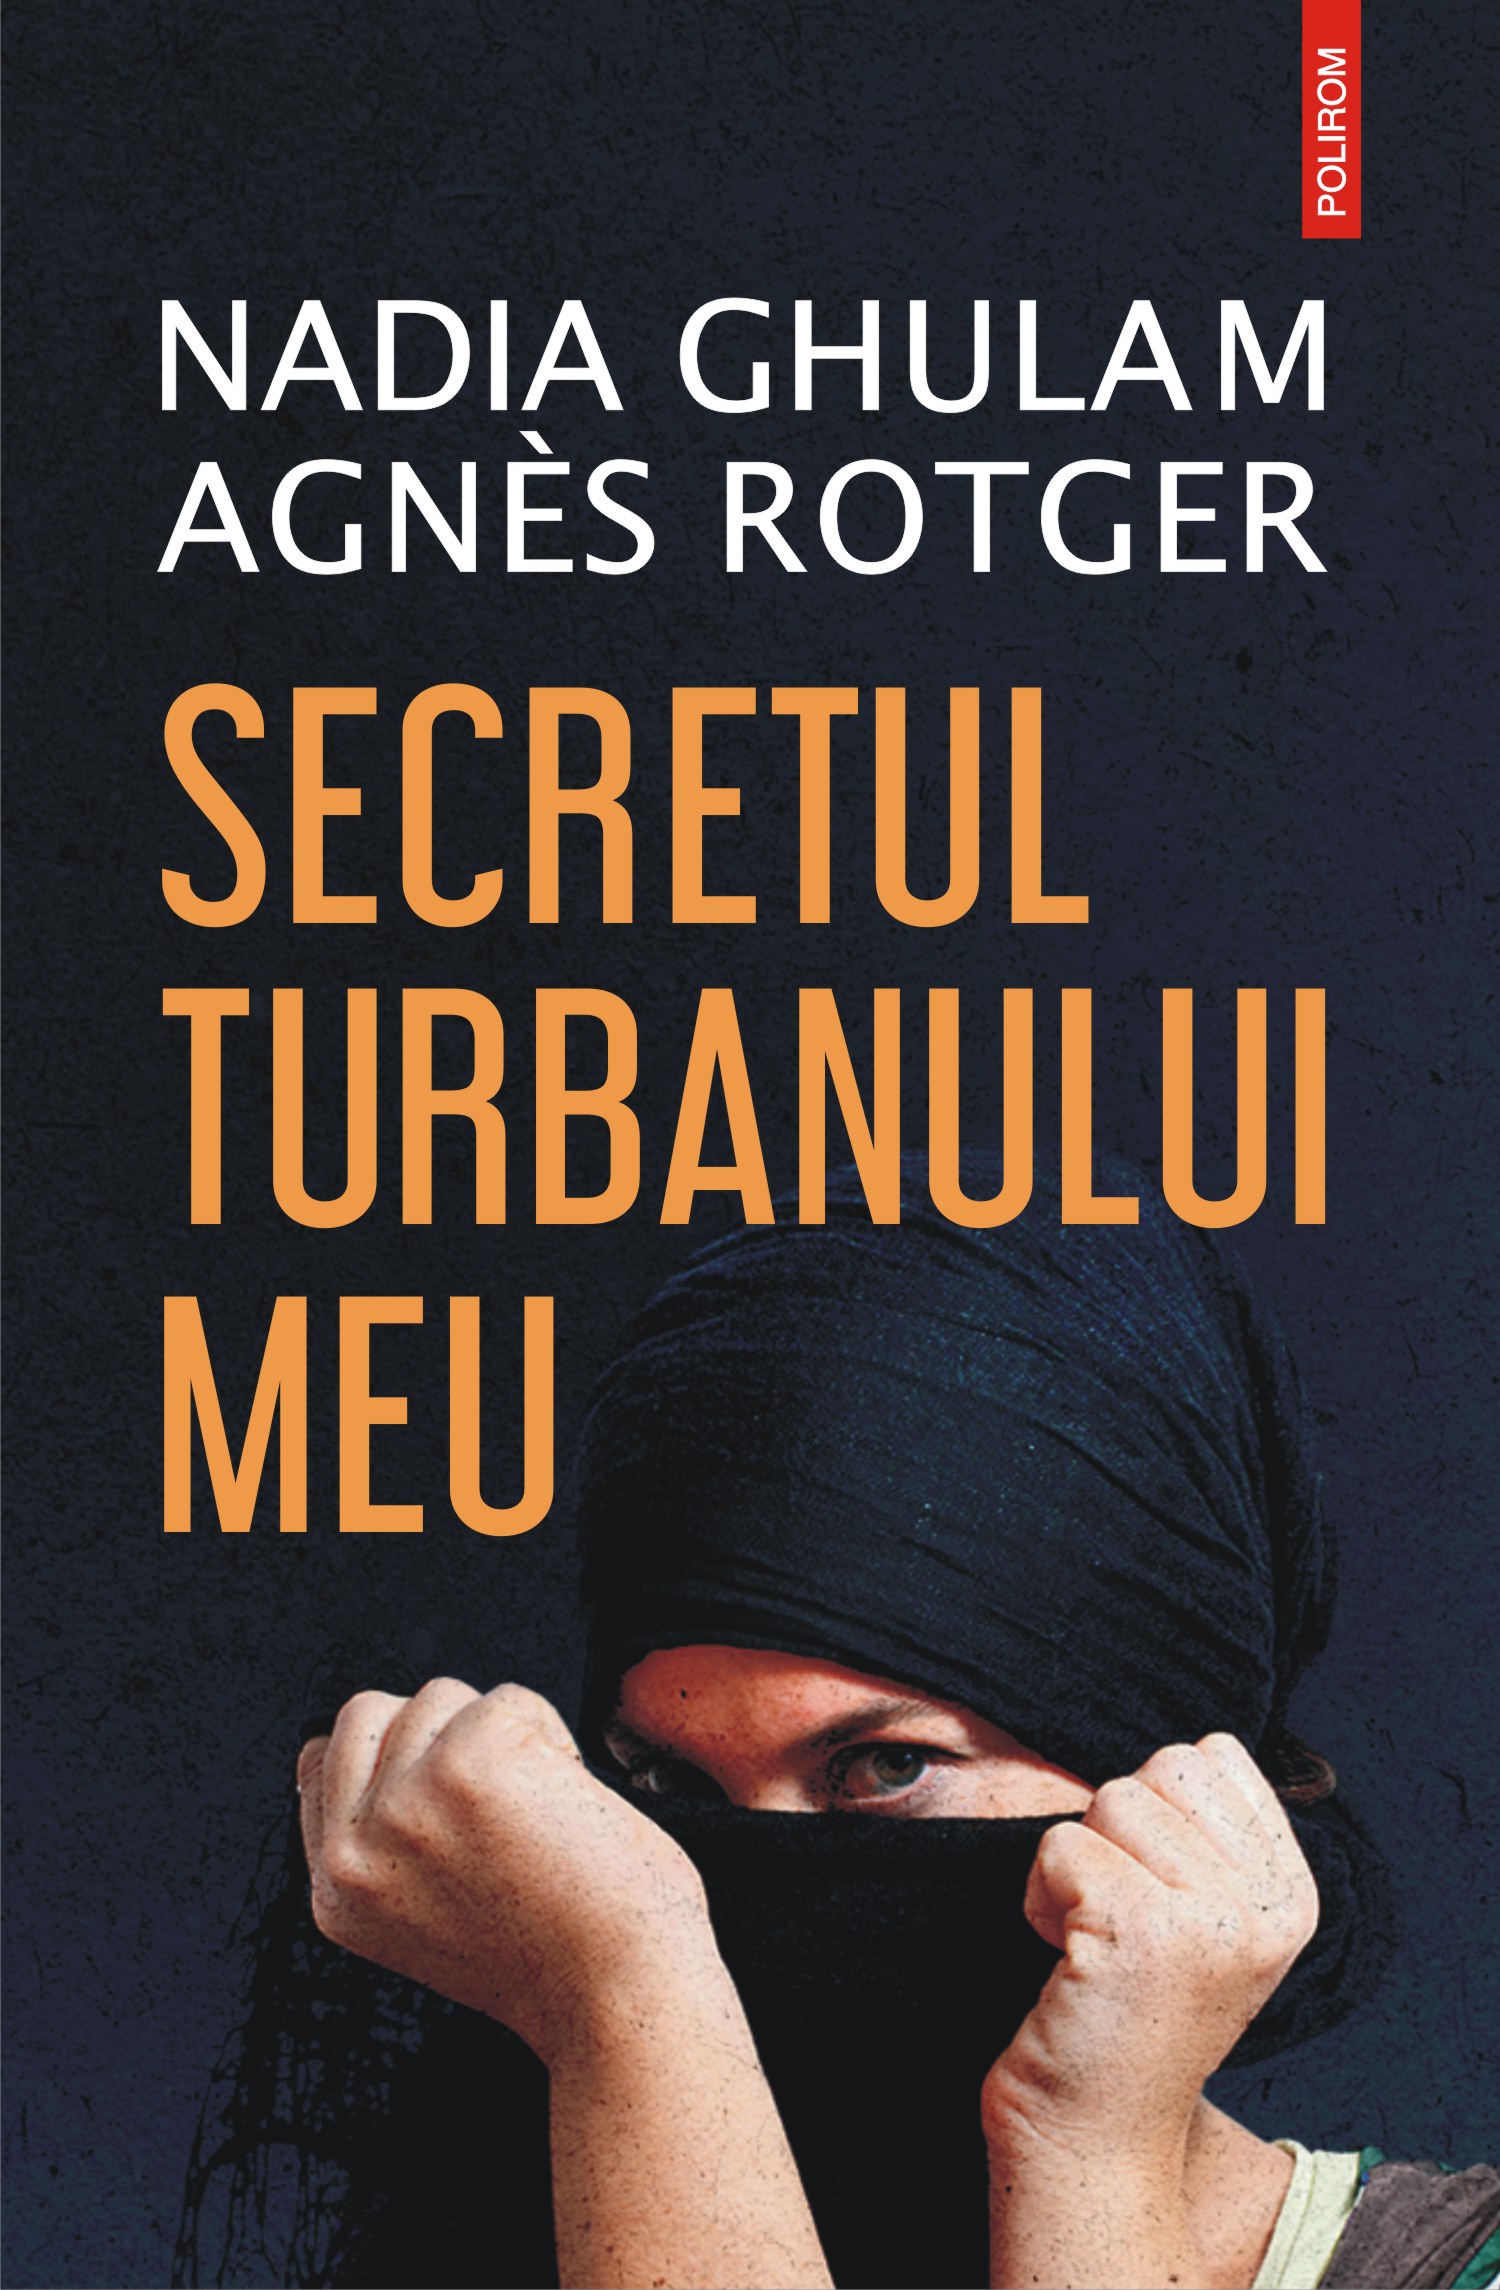 eBook Secretul turbanului meu - Nadia Ghulam Agnes Rotger